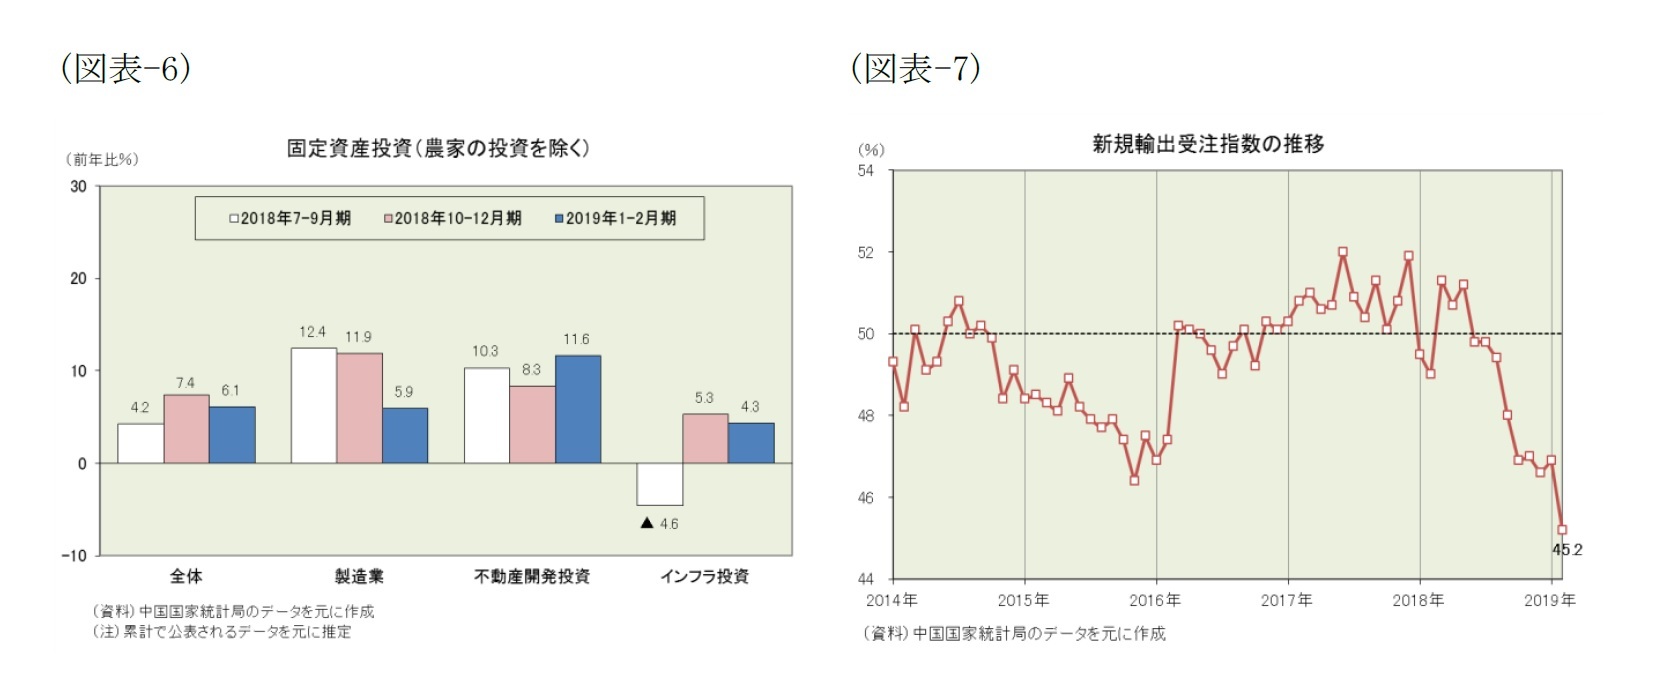 （図表-6）固定資産投資(農家の投資を除く)/（図表-7）新規輸出受注指数の推移